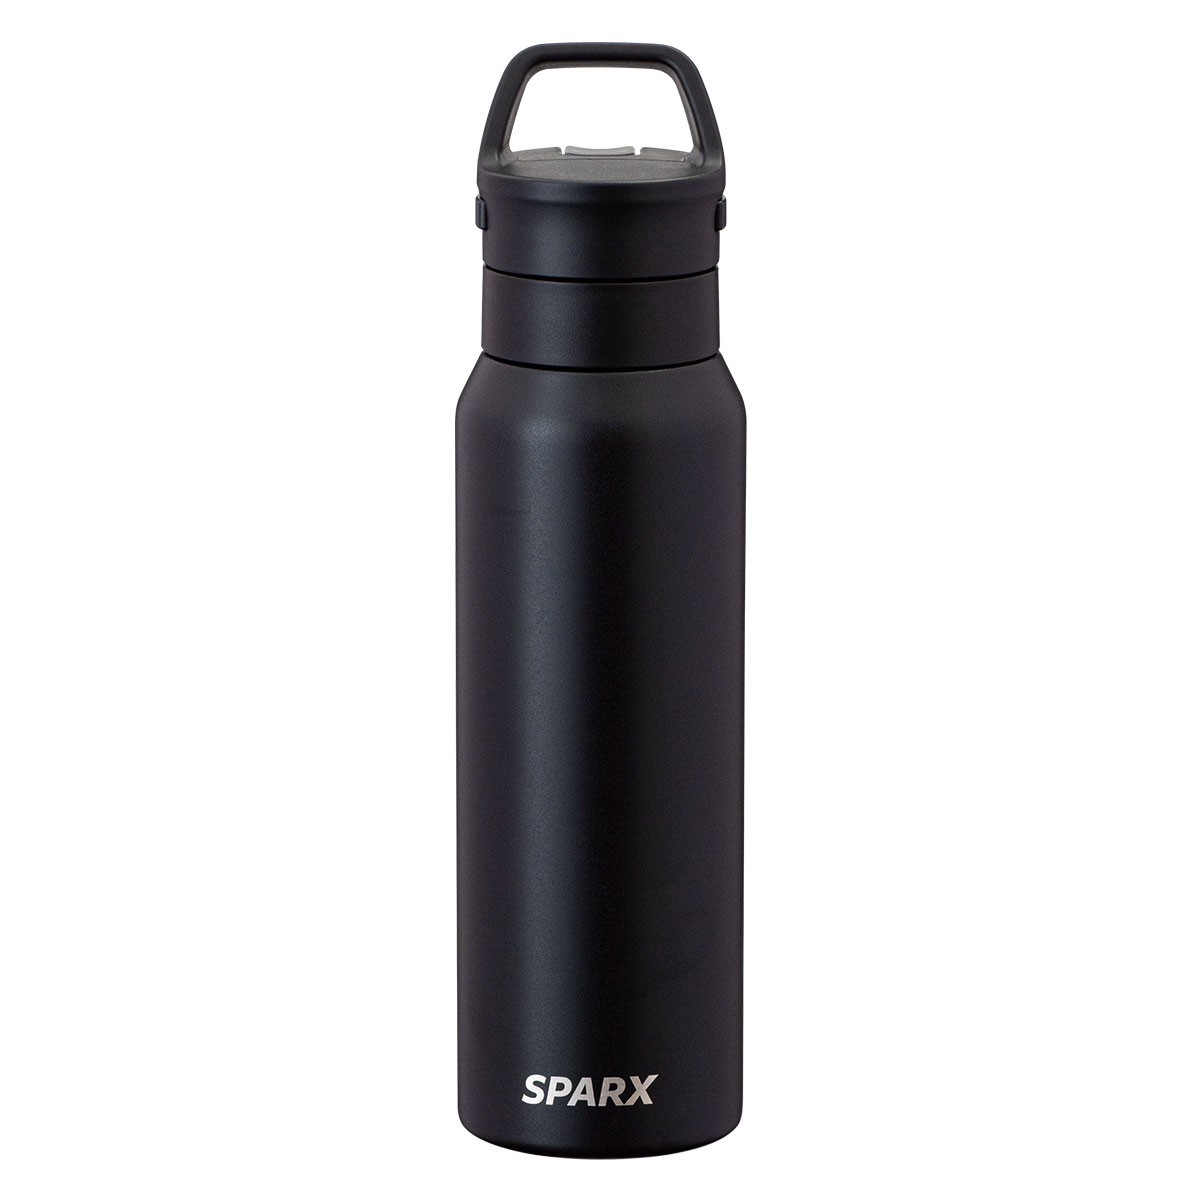 SPARX 真空断熱炭酸用ボトル 750ml ブラック image01